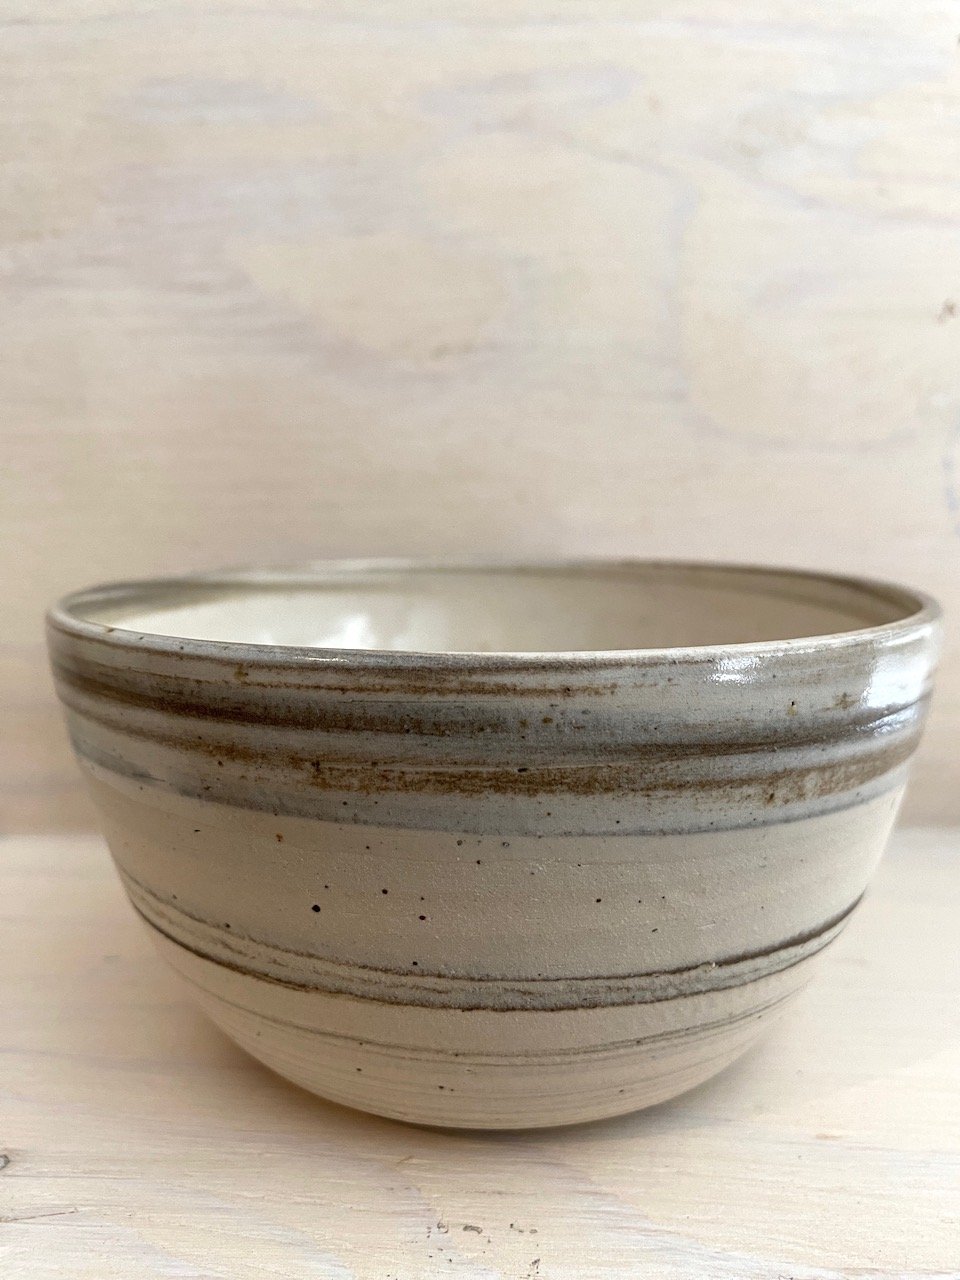 Snack or Breakfast bowl | 300-350ml | Handmade Ceramic by Emporium Julium - Lifestory - Emporium Julium